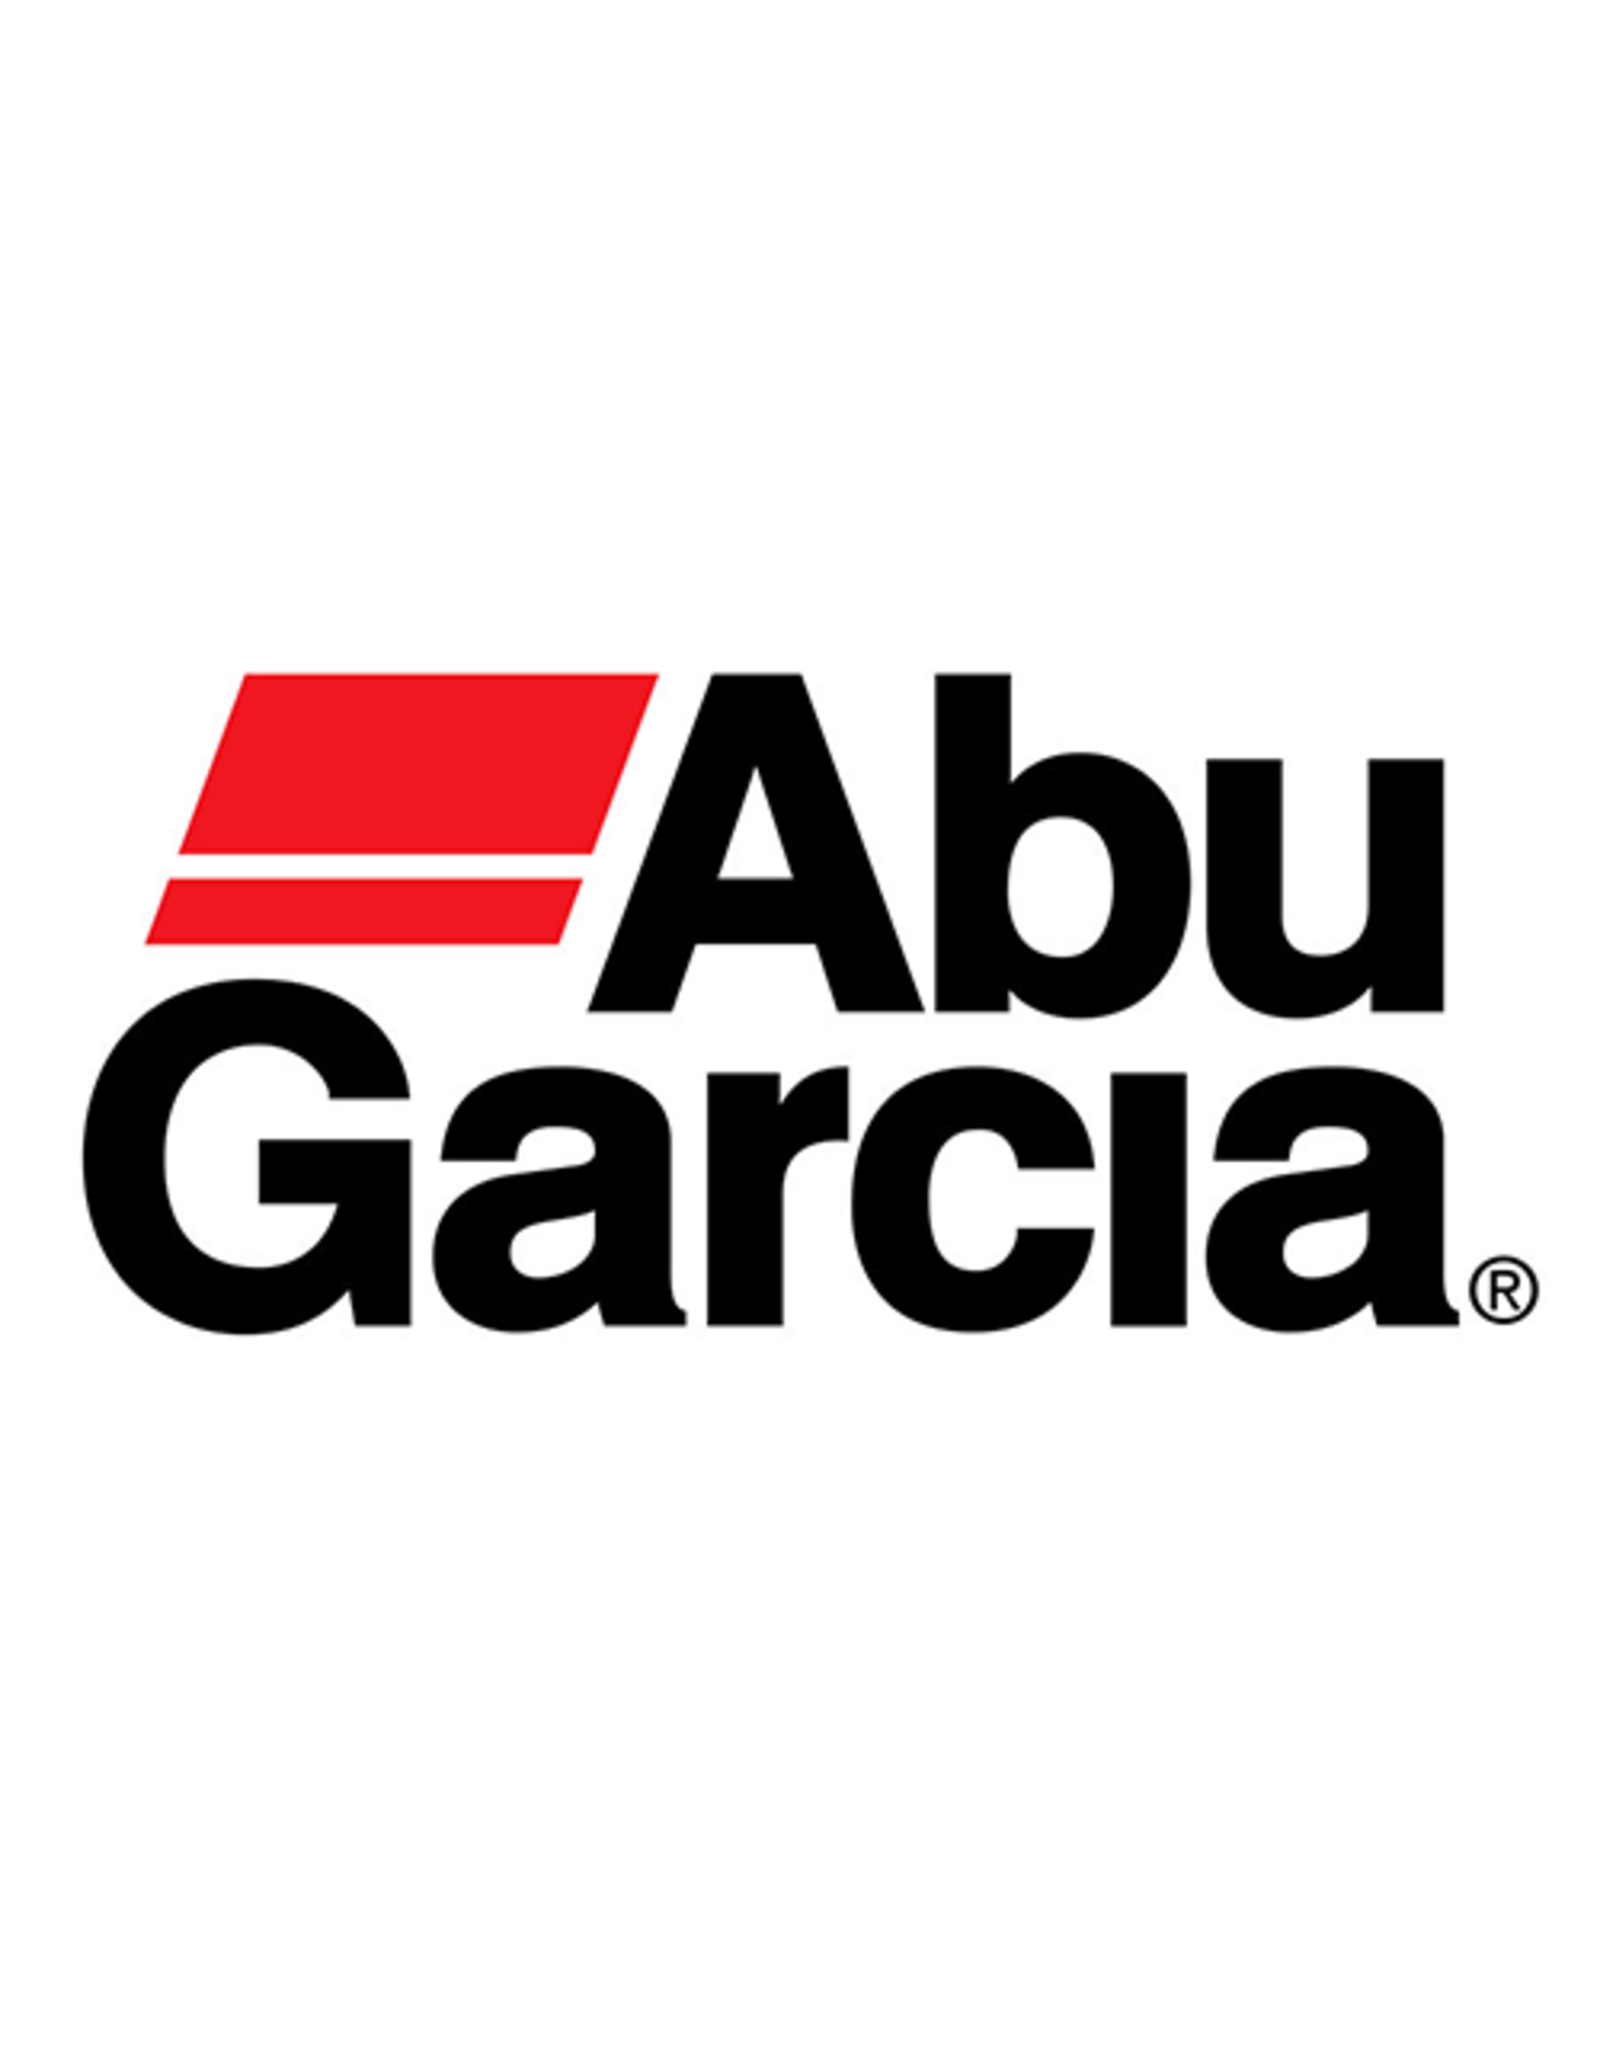 Abu Garcia 19688  O RING